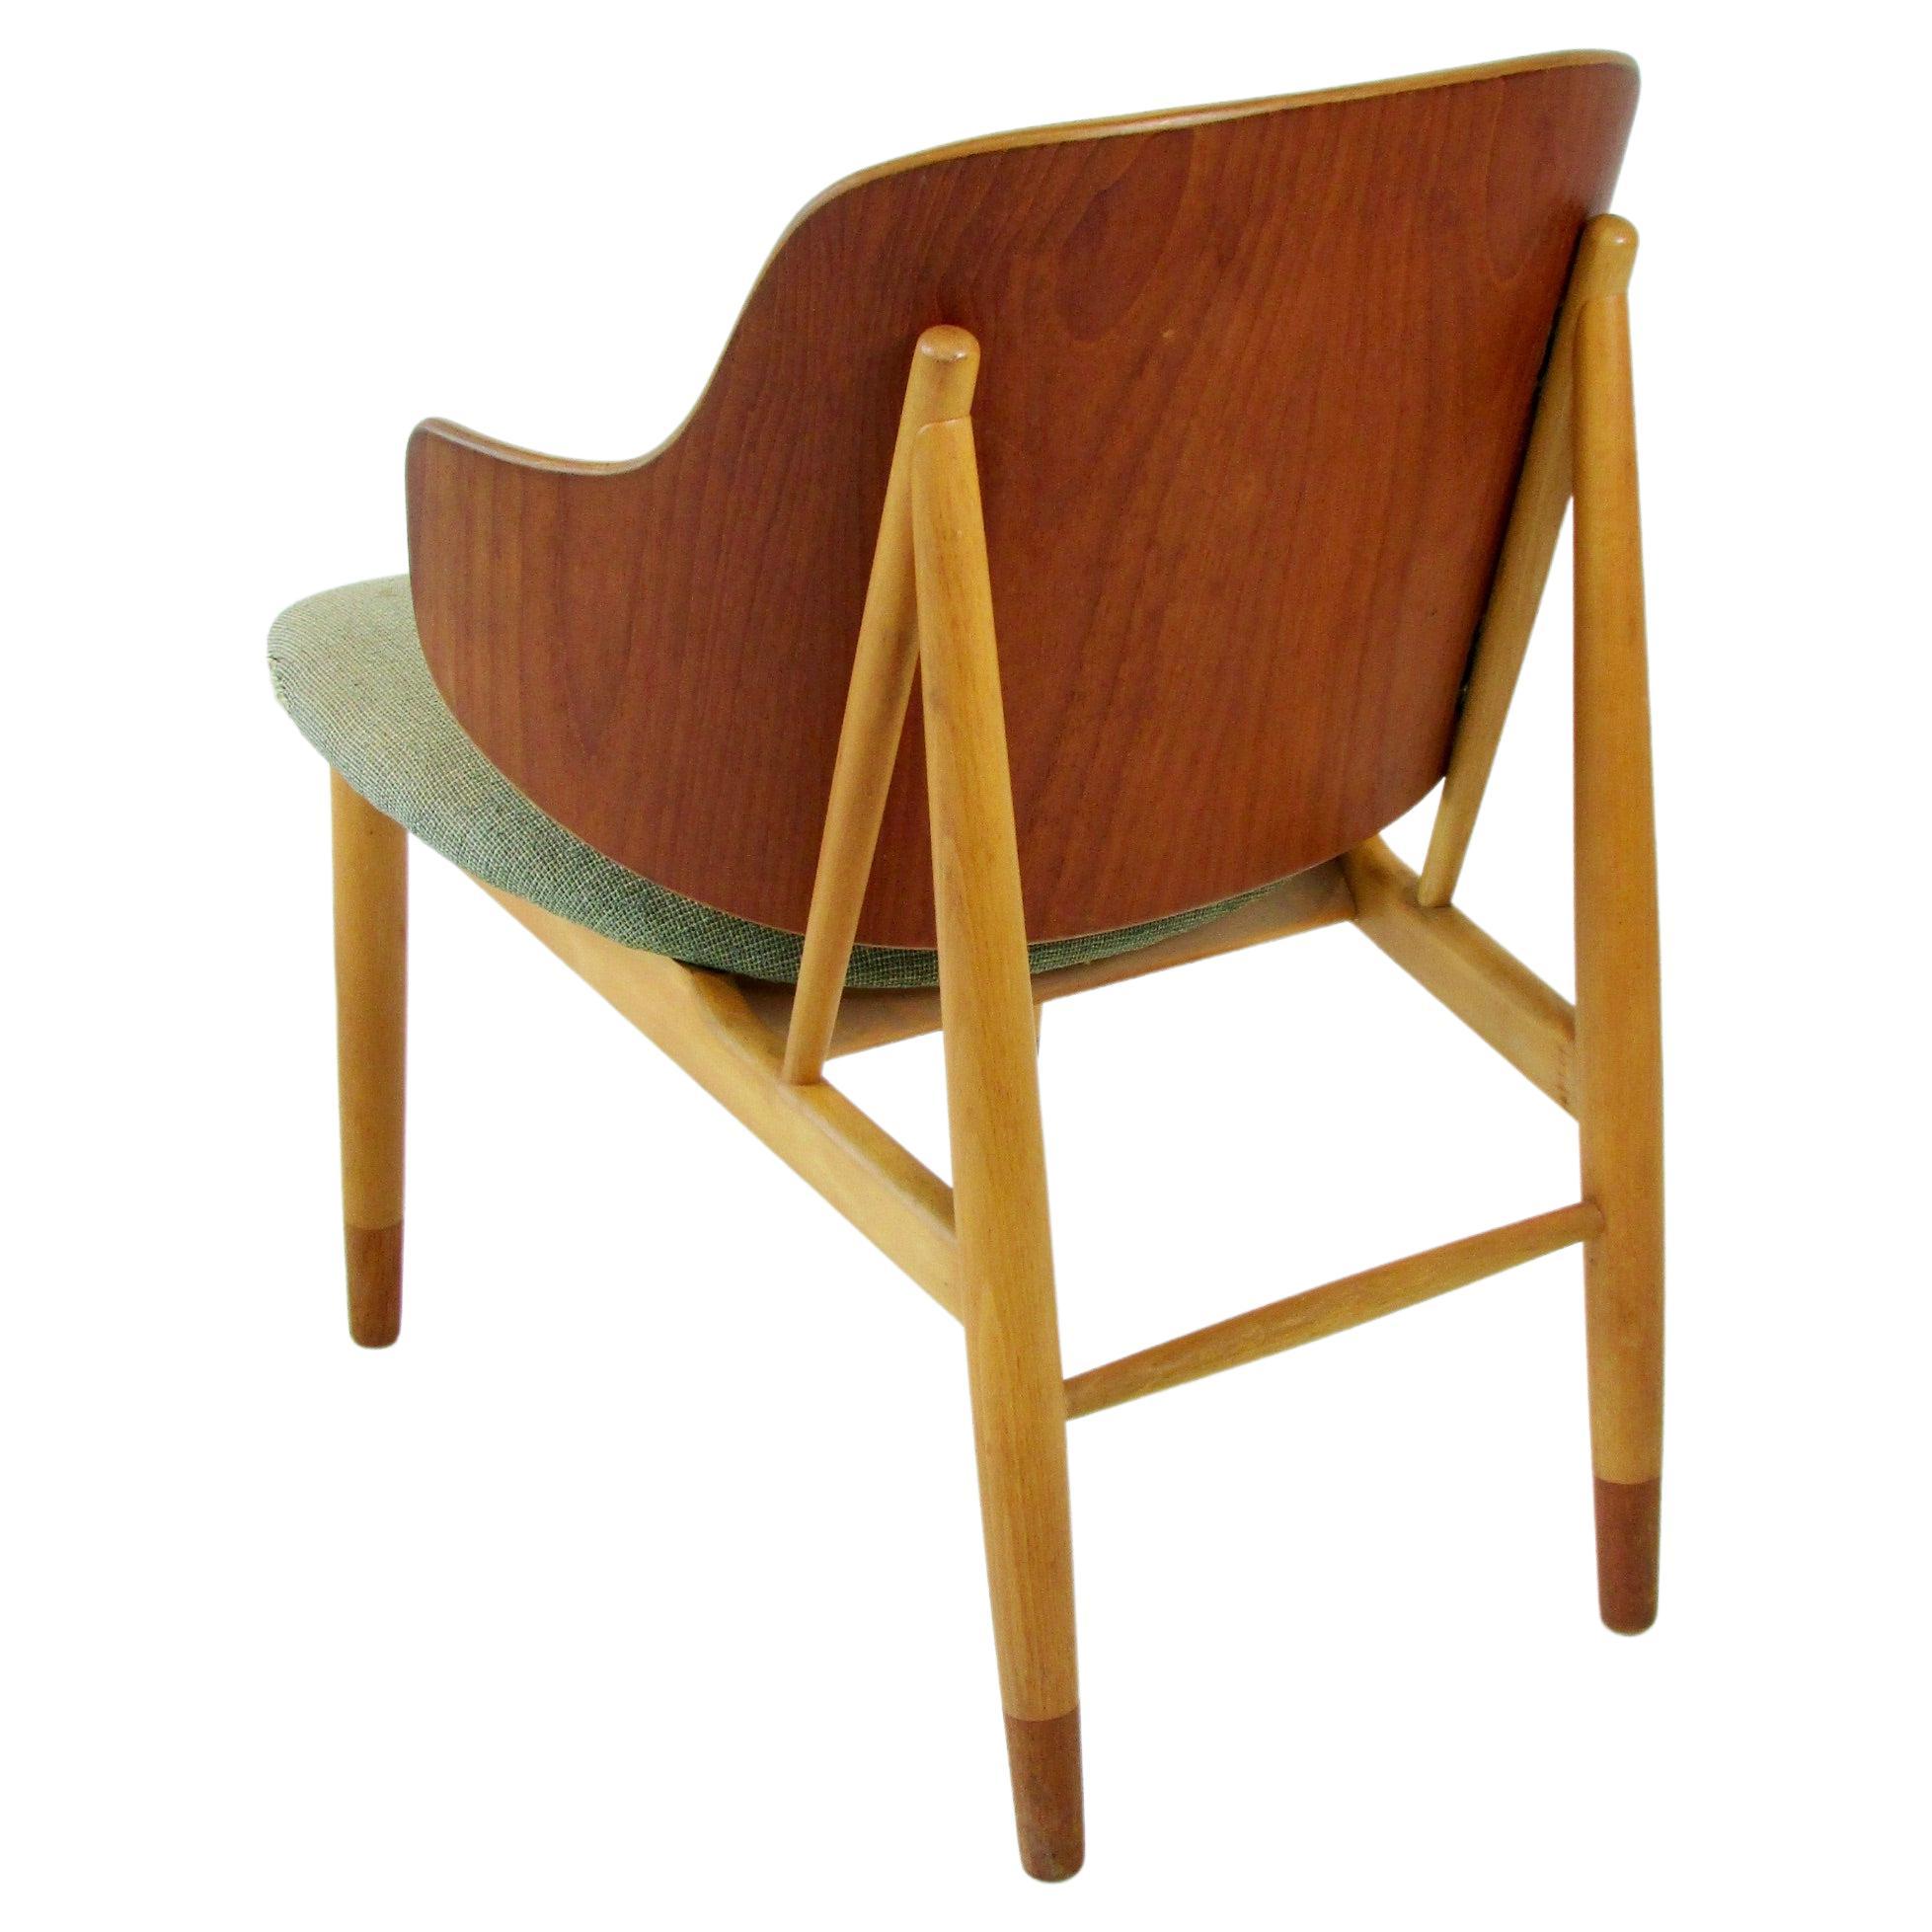 Ib Kofod-Larsen Penguin chair for Christiansen and Larsen Denmark 1955 For Sale